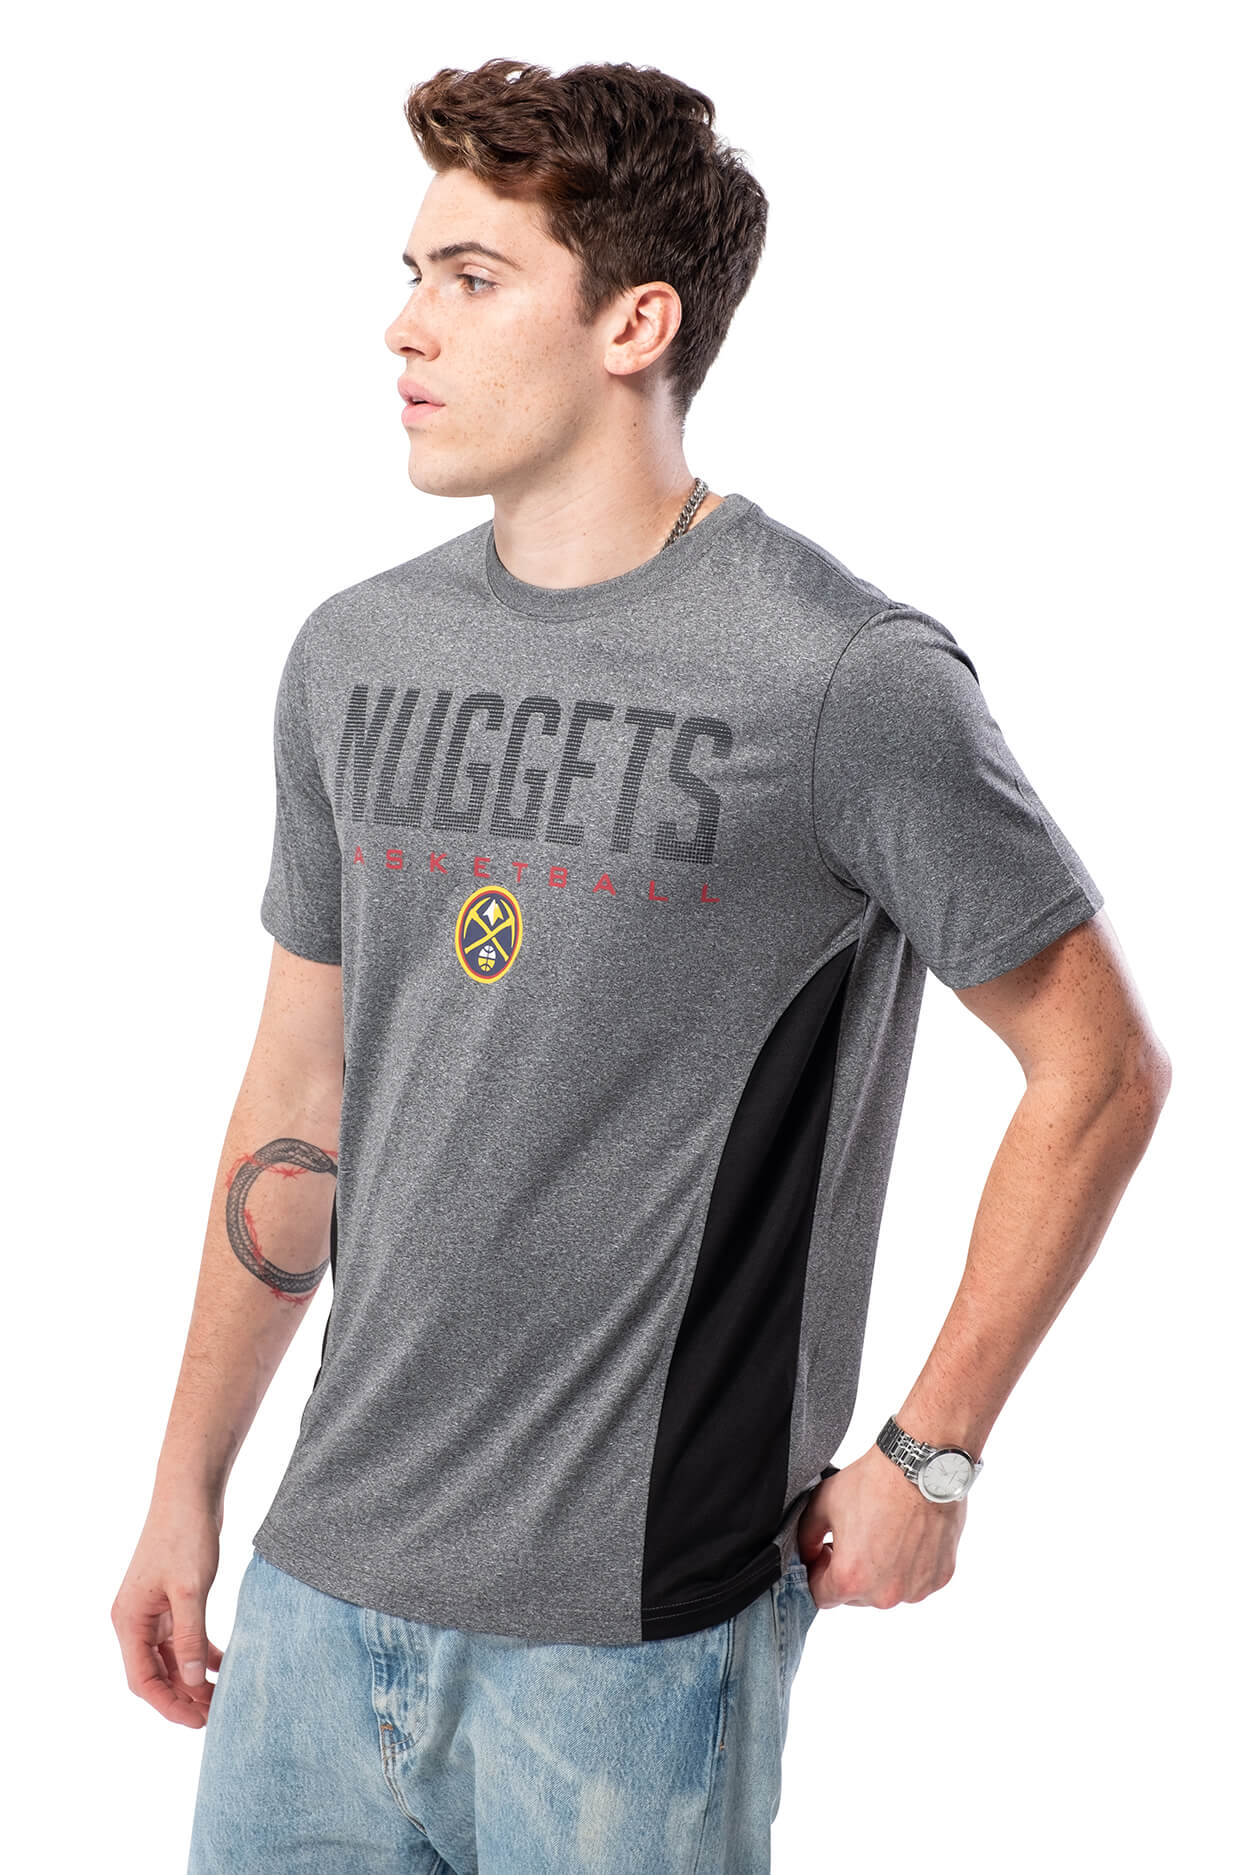 NBA Denver Nuggets Men's Short Sleeve Tee|Denver Nuggets